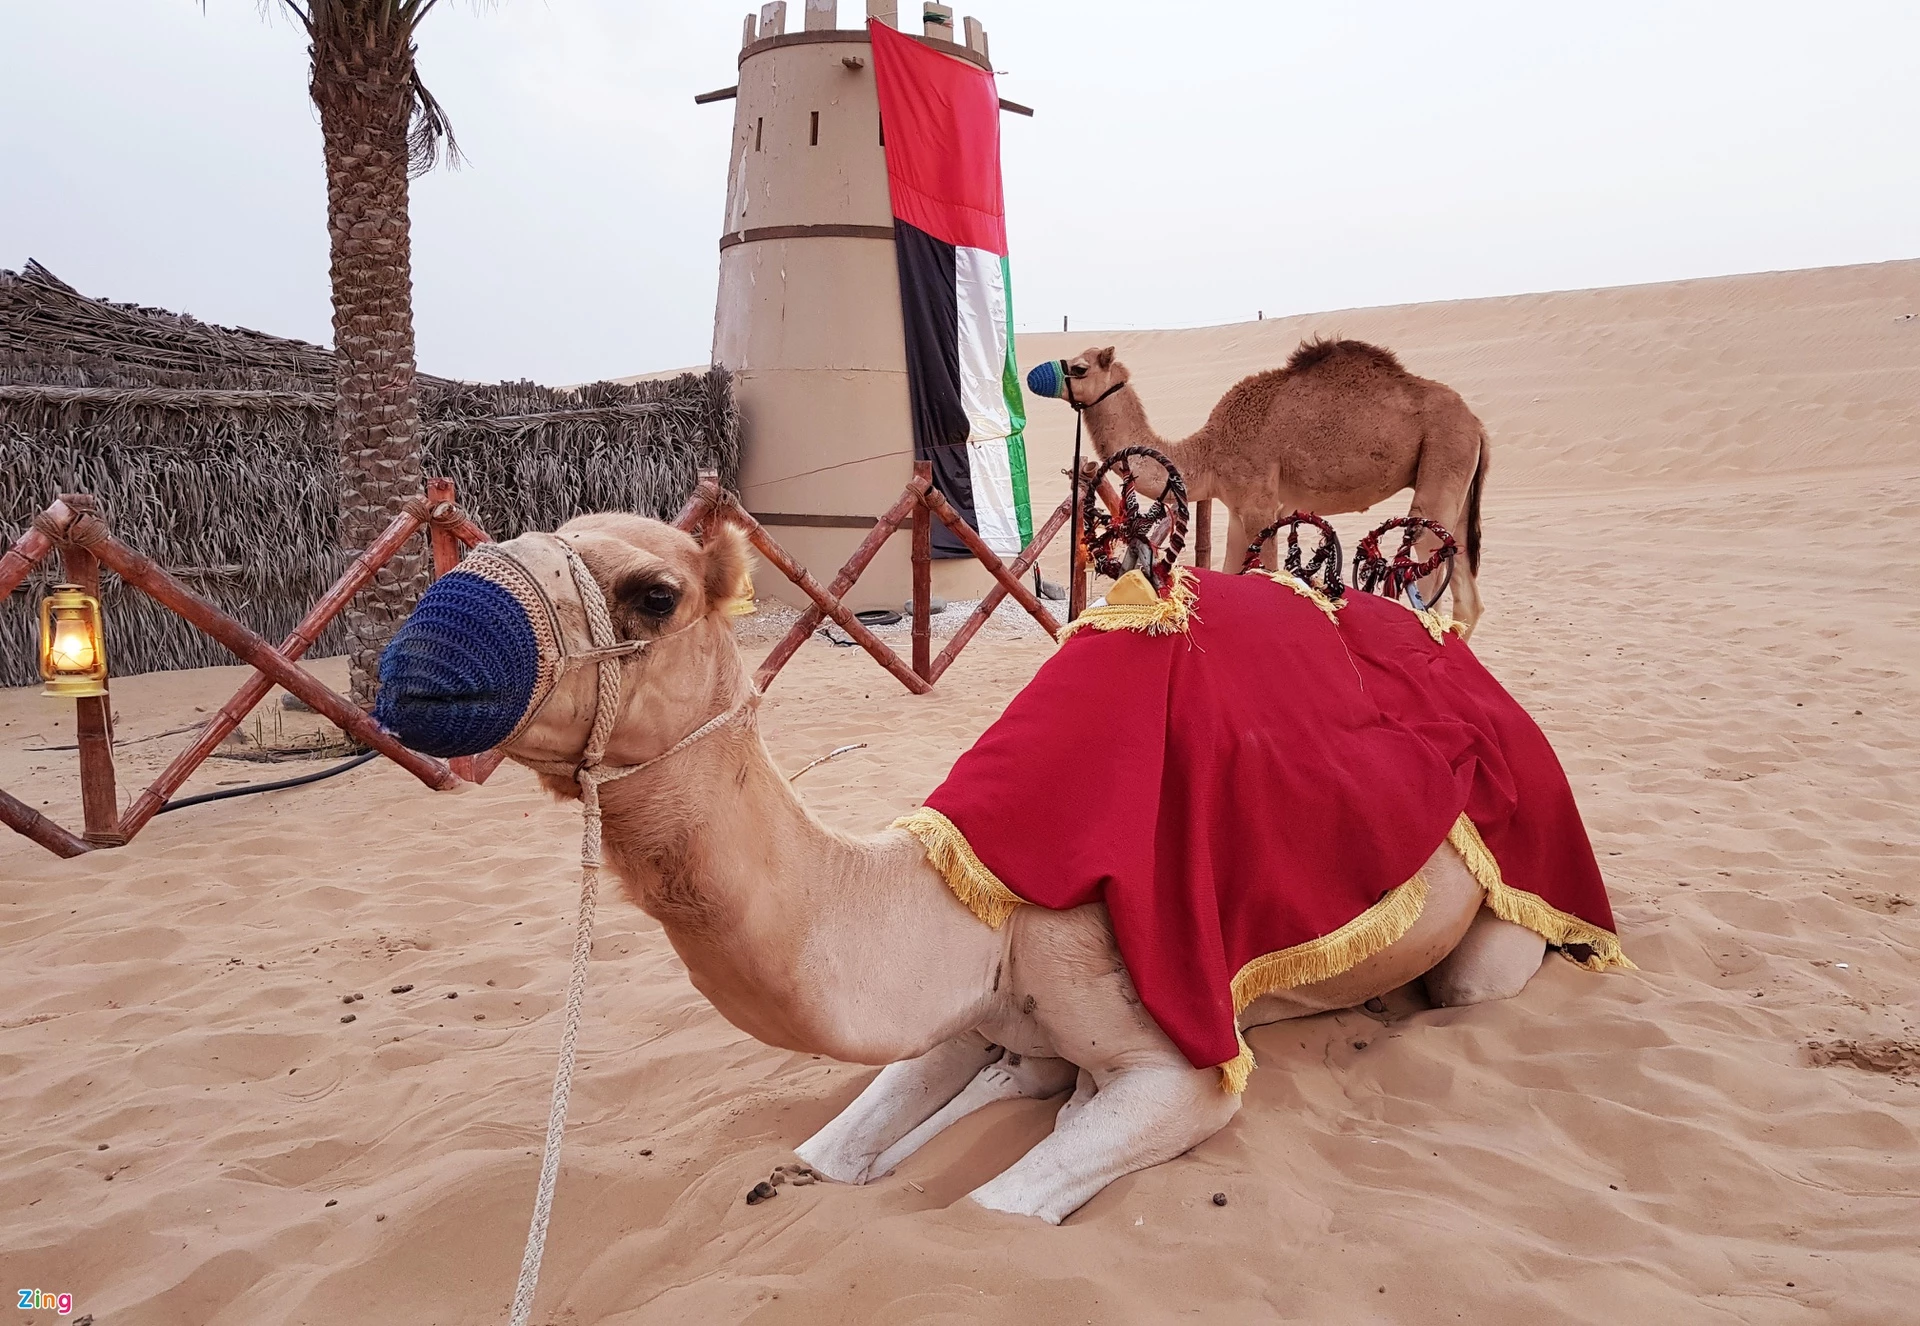 Lạc đà được xem là linh hồn trong truyền thống và văn hóa UAE: Lạc đà đi vào đời sống du mục, trở thành một phần quan trọng trong truyền thống và lịch sử đất nước. Du khách đến UAE đừng bỏ qua việc tham quan trang trại lạc đà, cưỡi lạc đà trên sa mạc hay uống sữa của loài vật này.